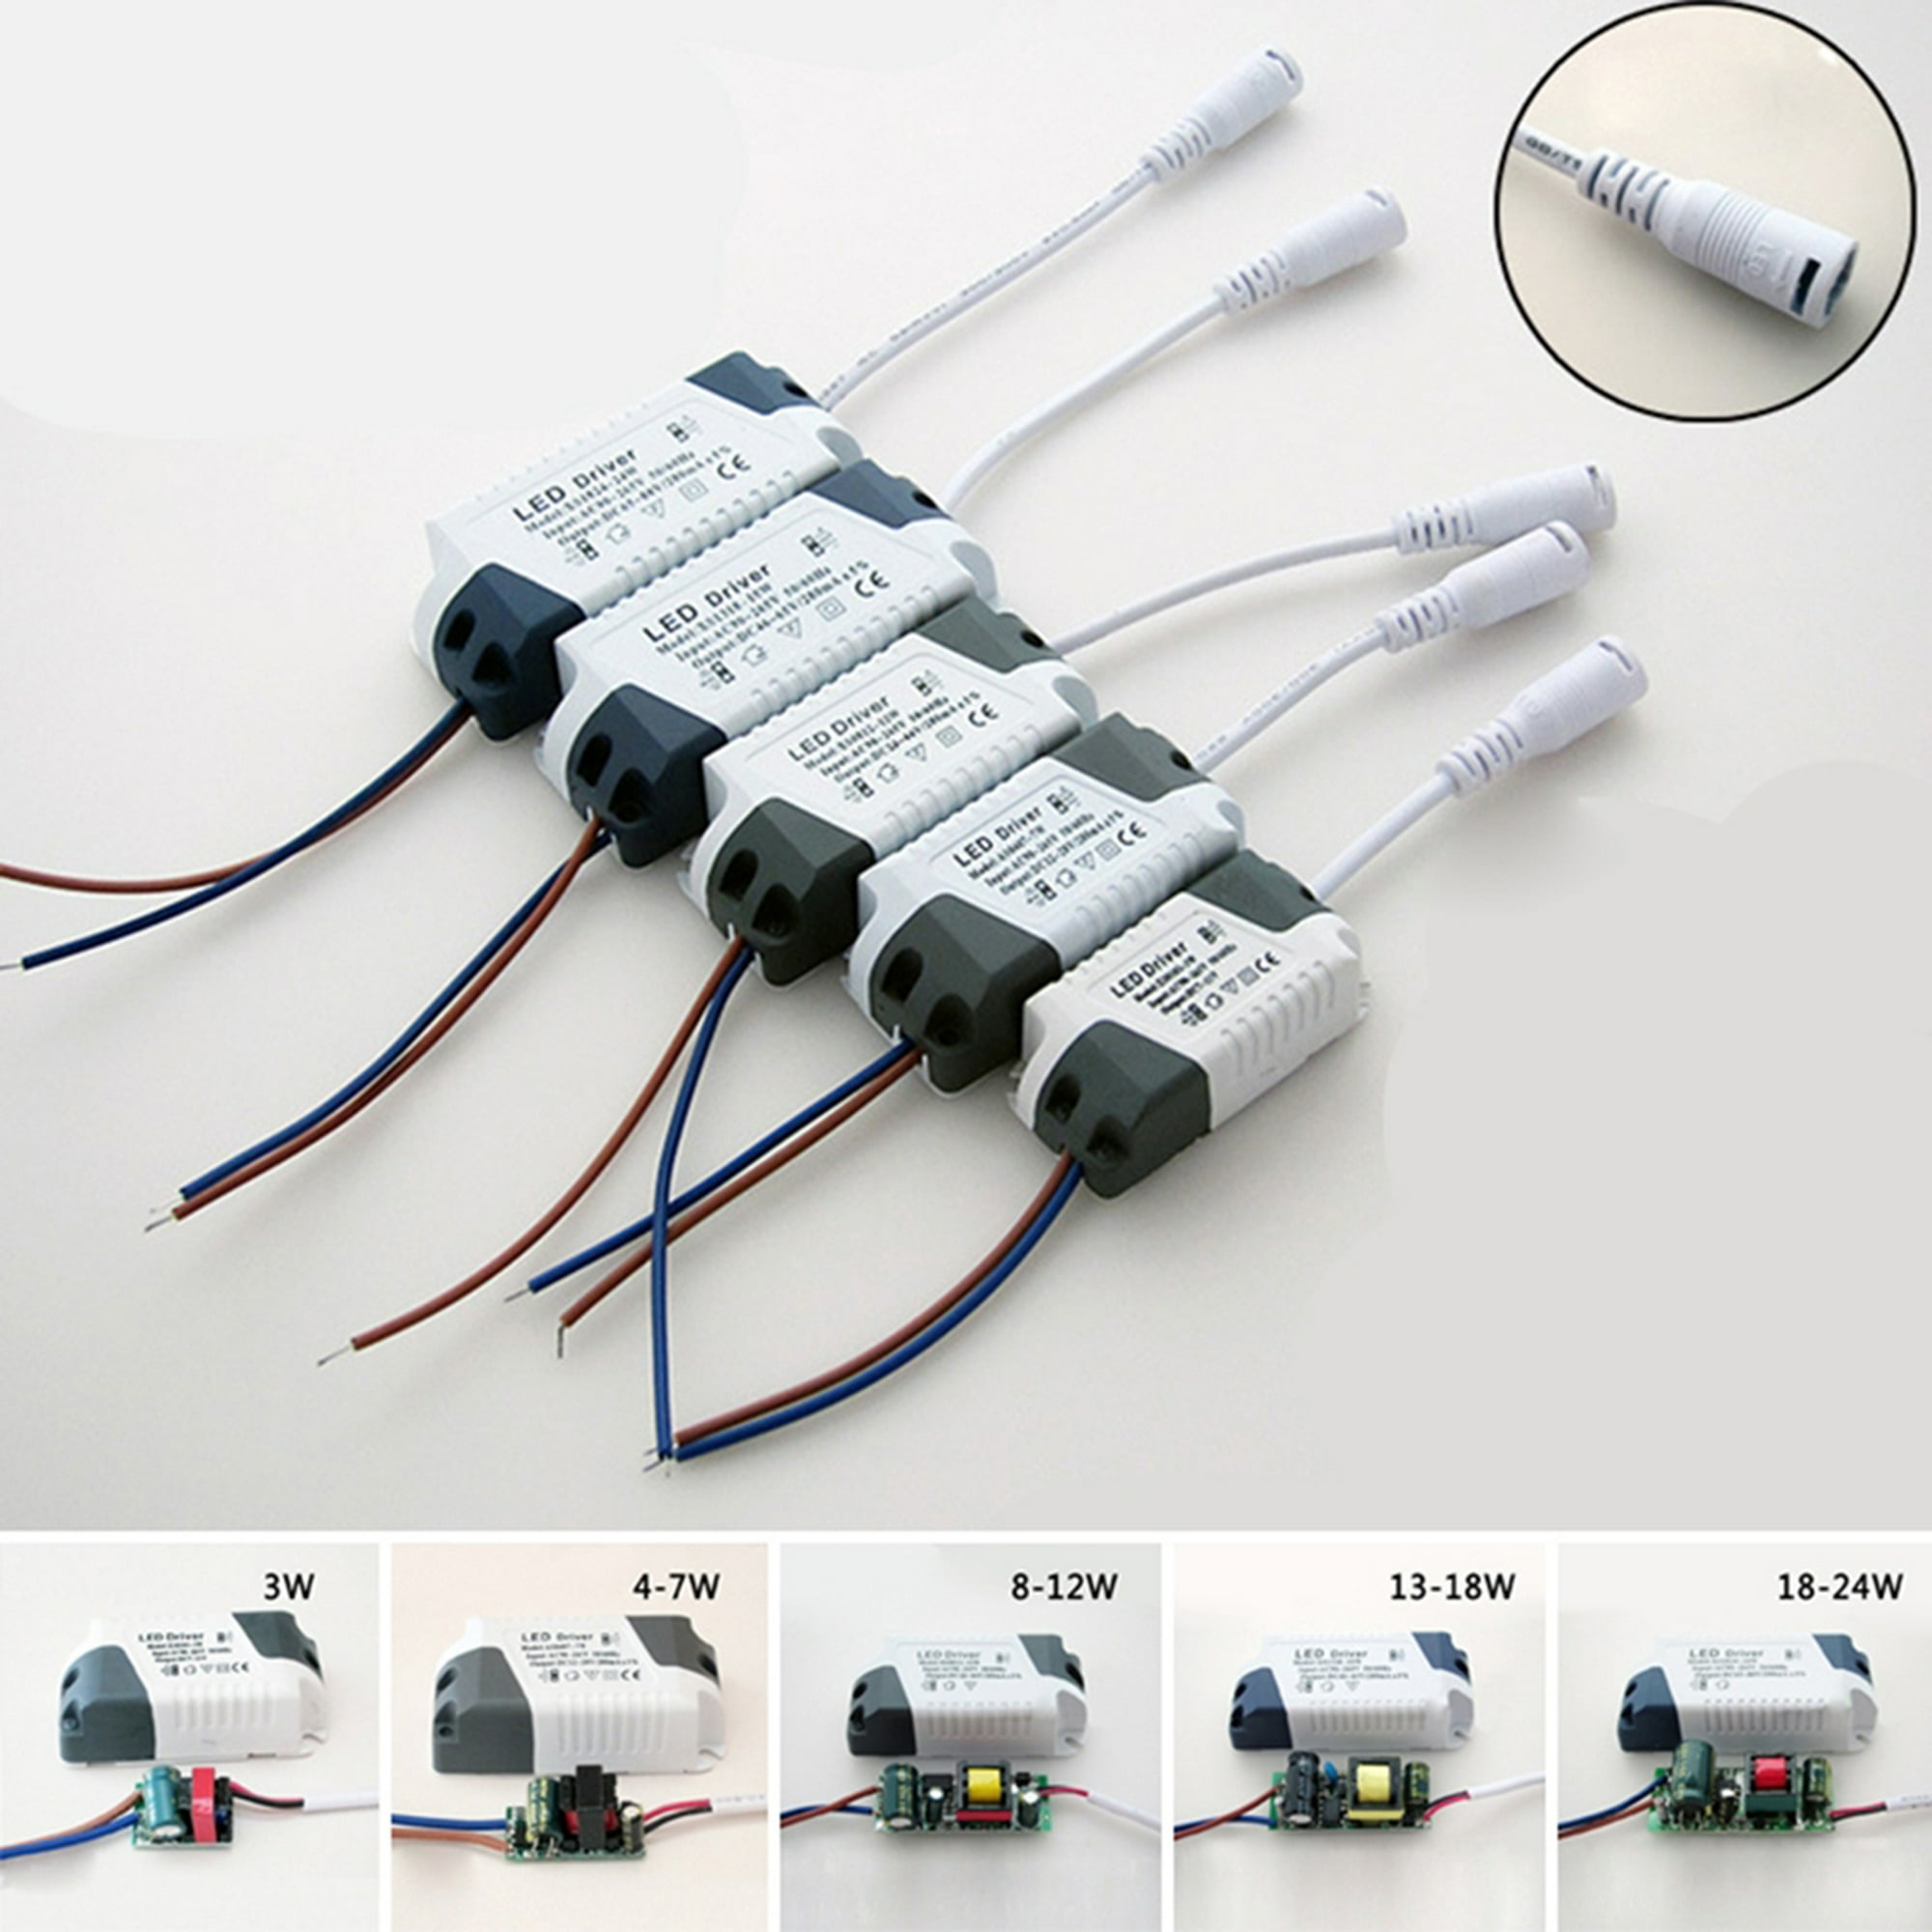 Controladores Driver para Led - Fácil Electro Electrónica